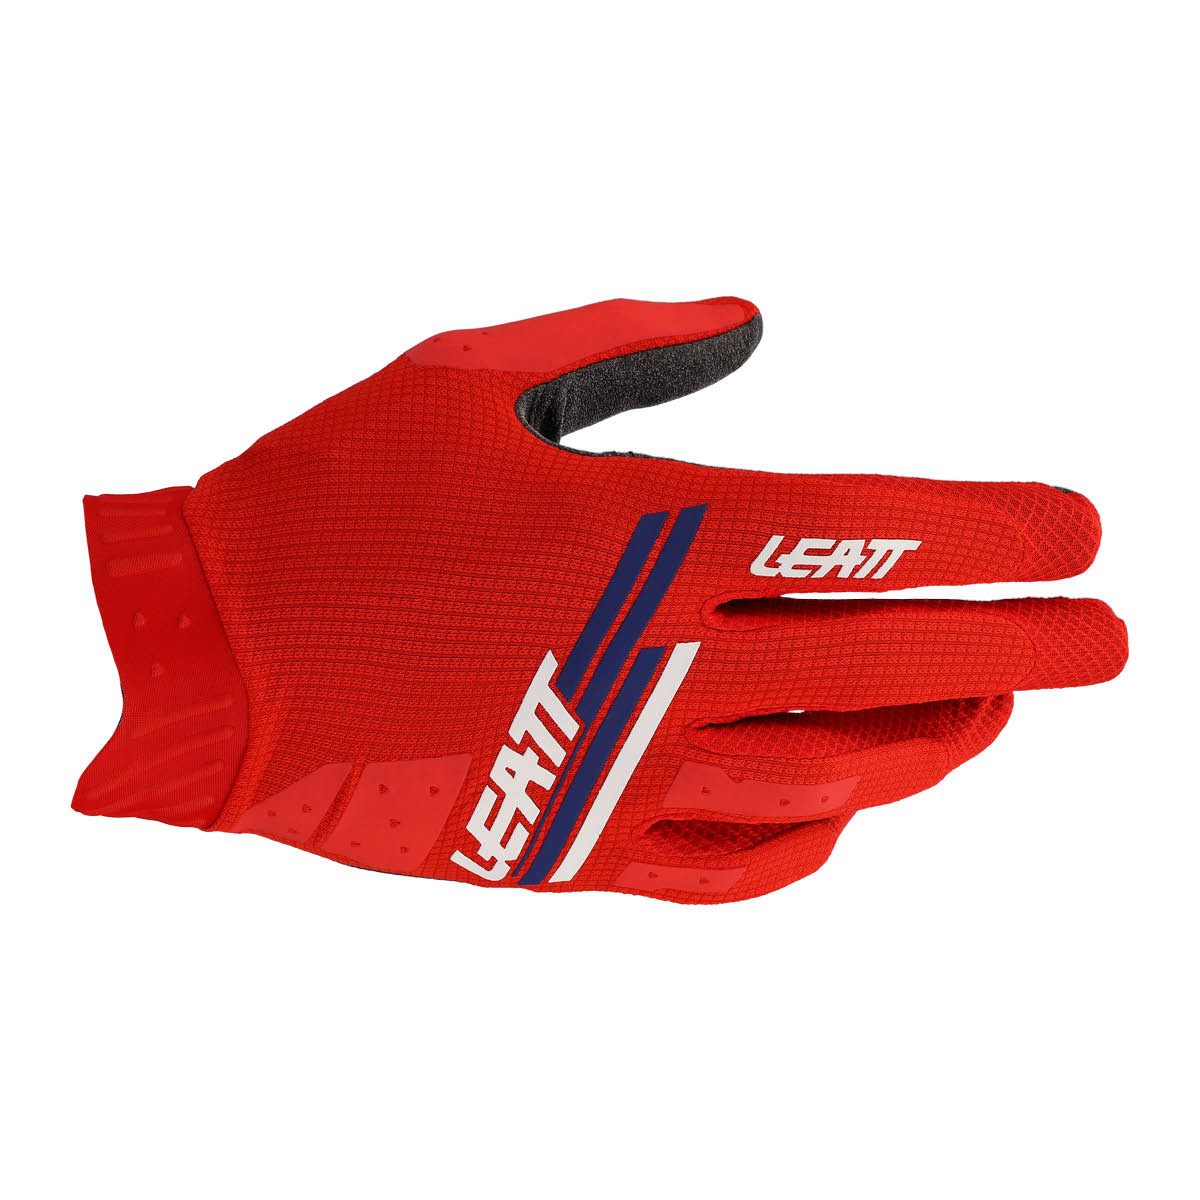 Leatt Glove Moto 1.5 GripR #XXL/EU11/US12 Red v22, XL rot